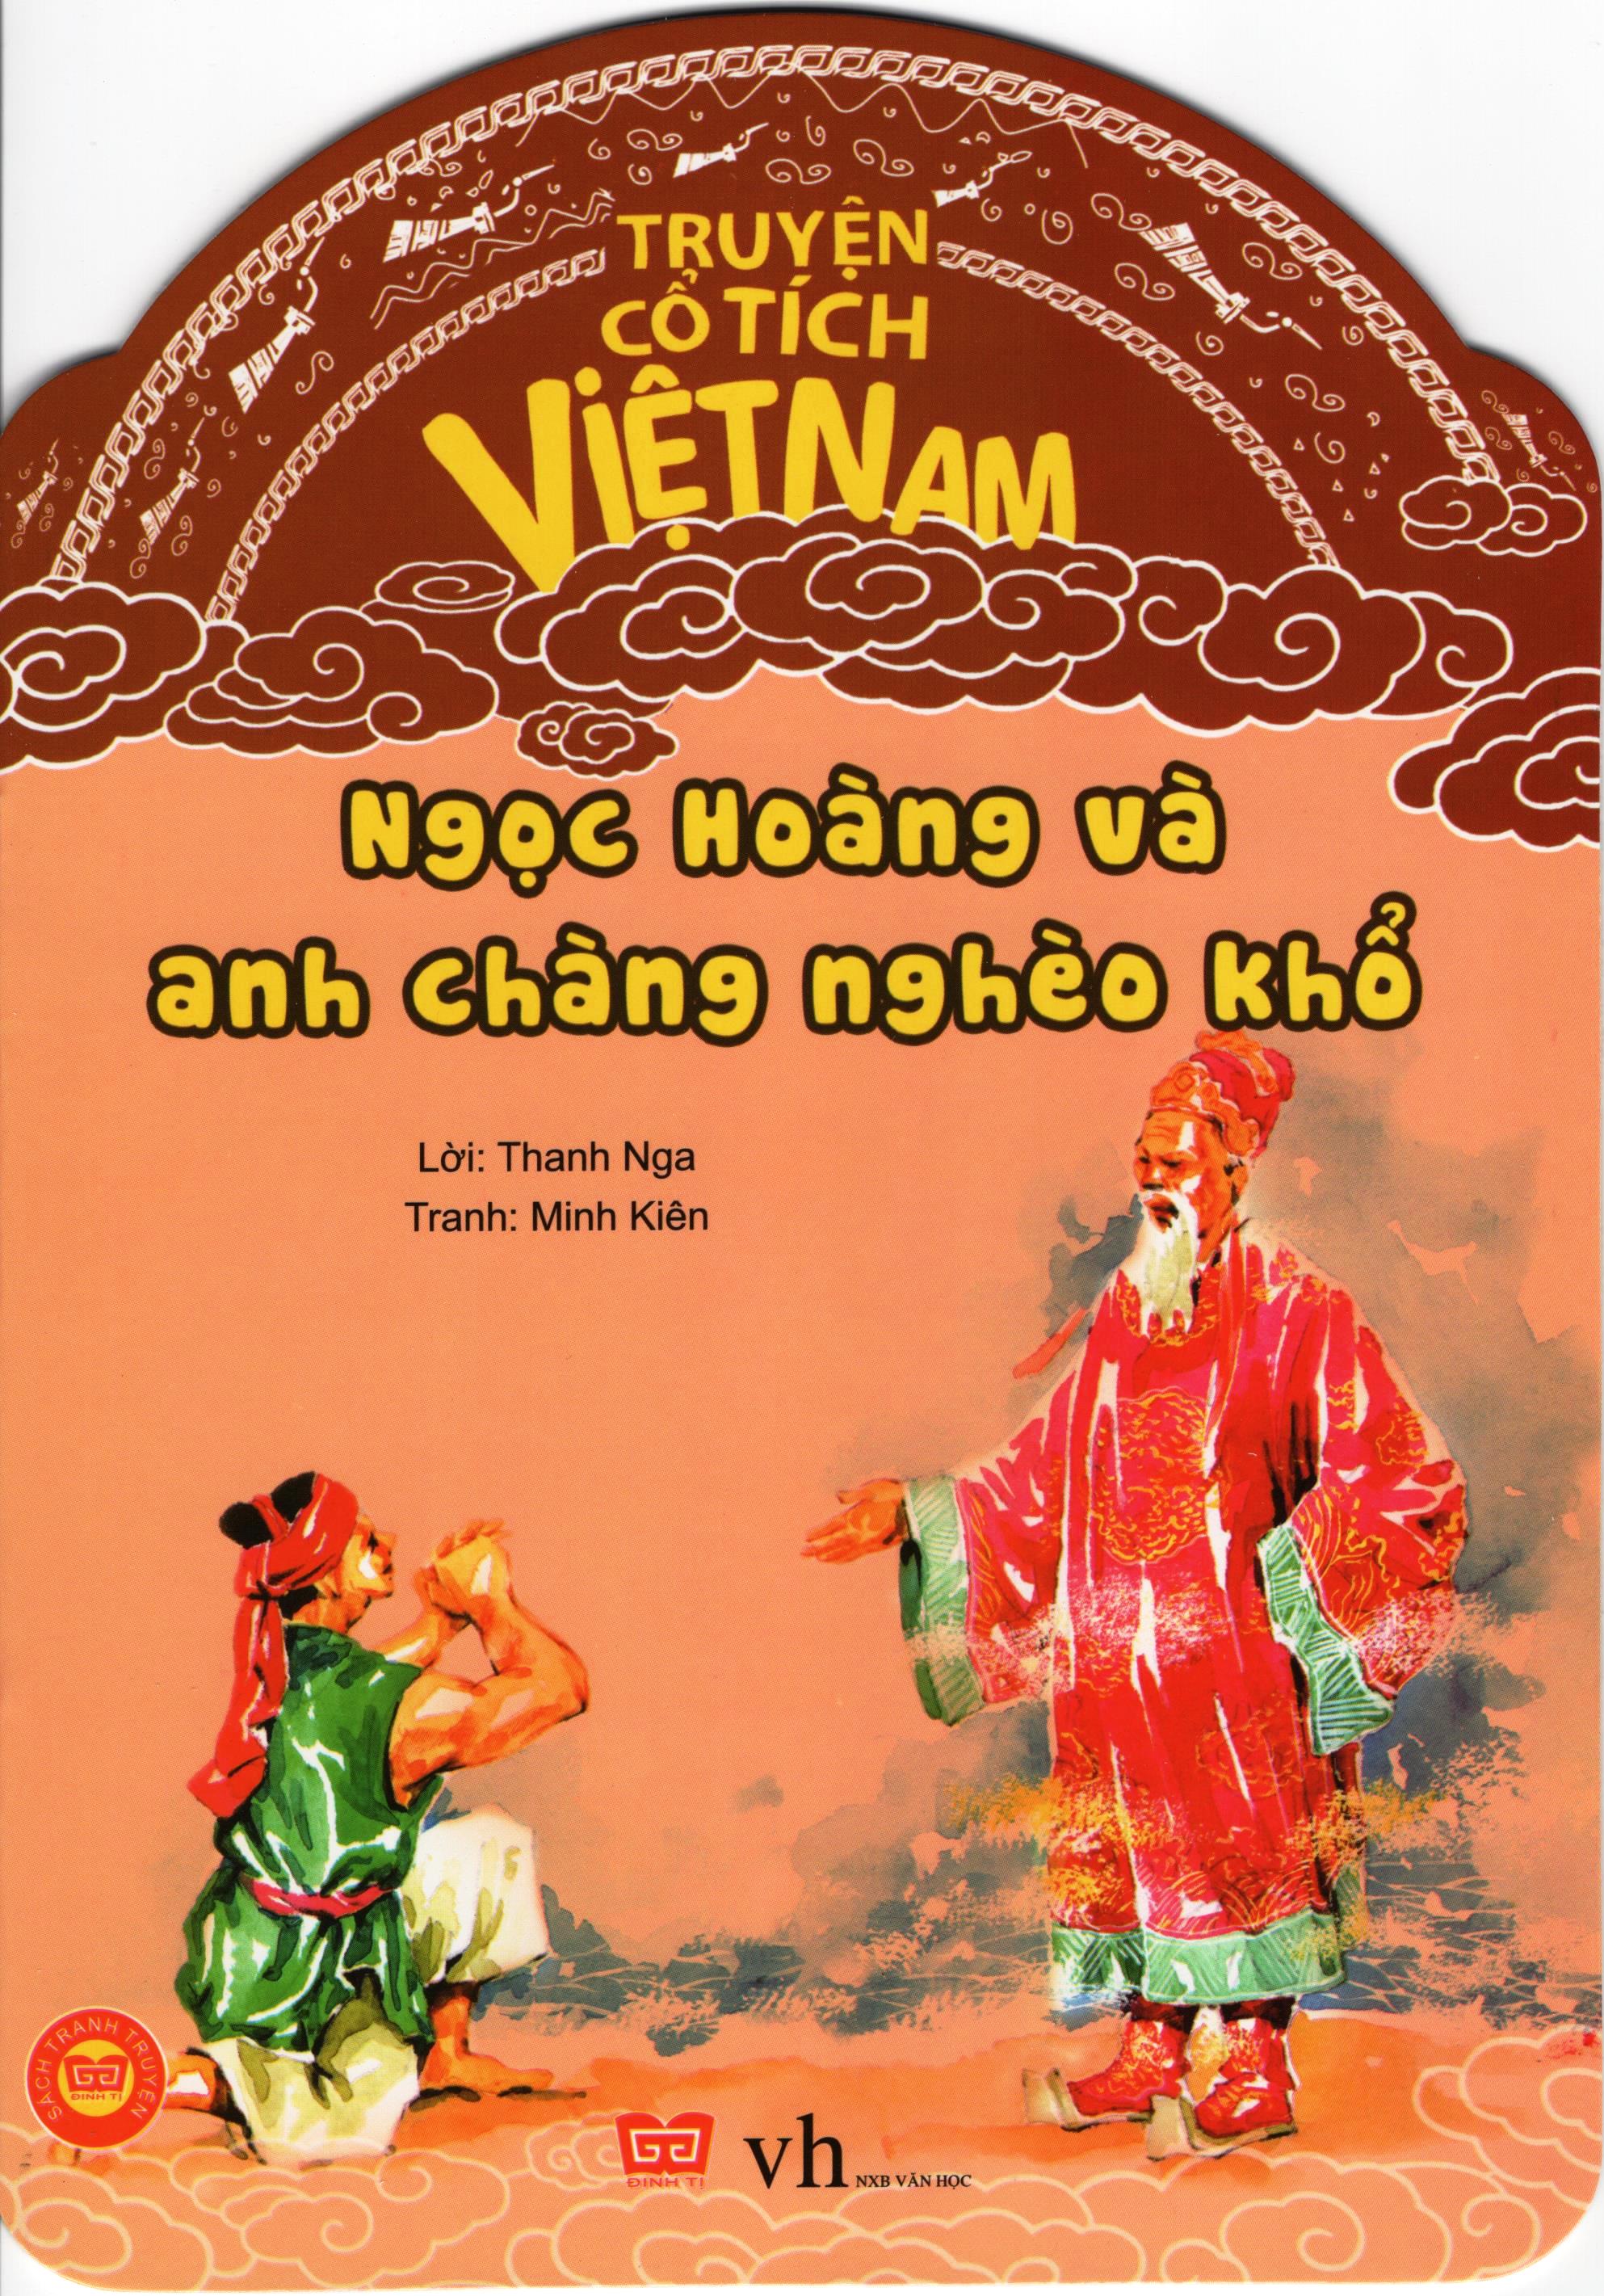 Hình ảnh Truyện Cổ Tích Việt Nam - Ngọc Hoàng Và Anh Chàng Nghèo Khổ